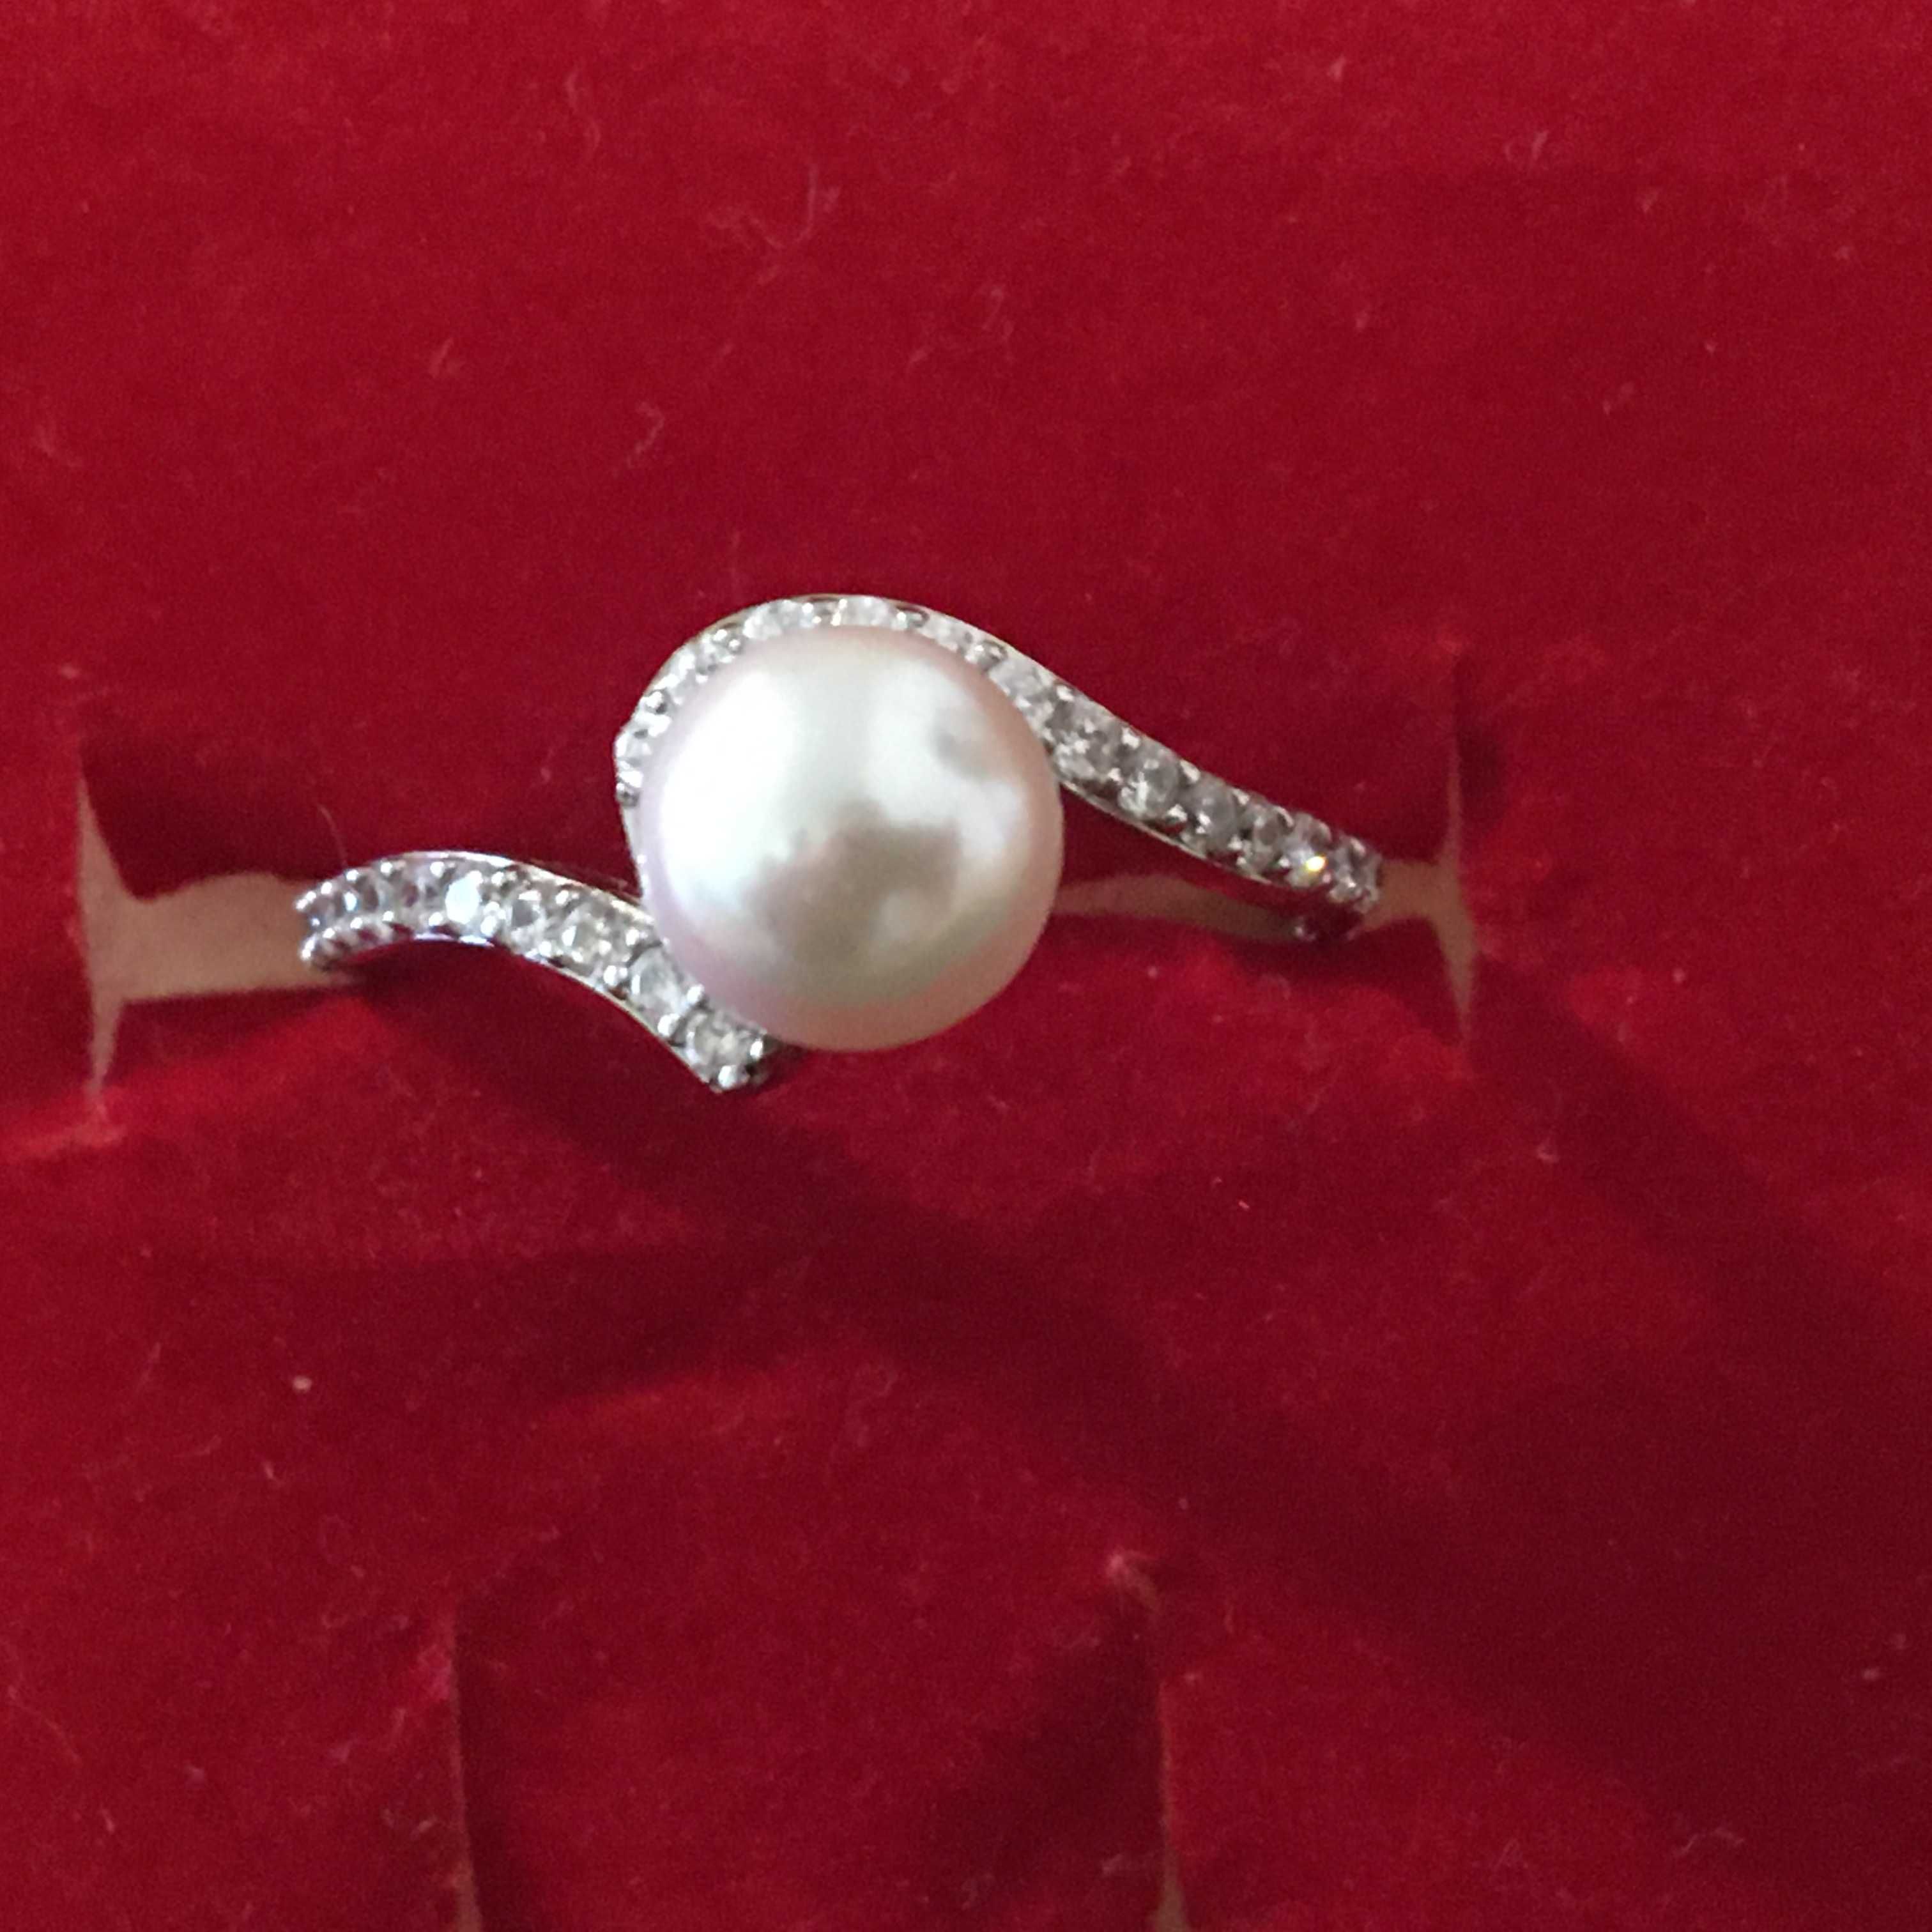 Inel din argint cu perla (pret negociabil)